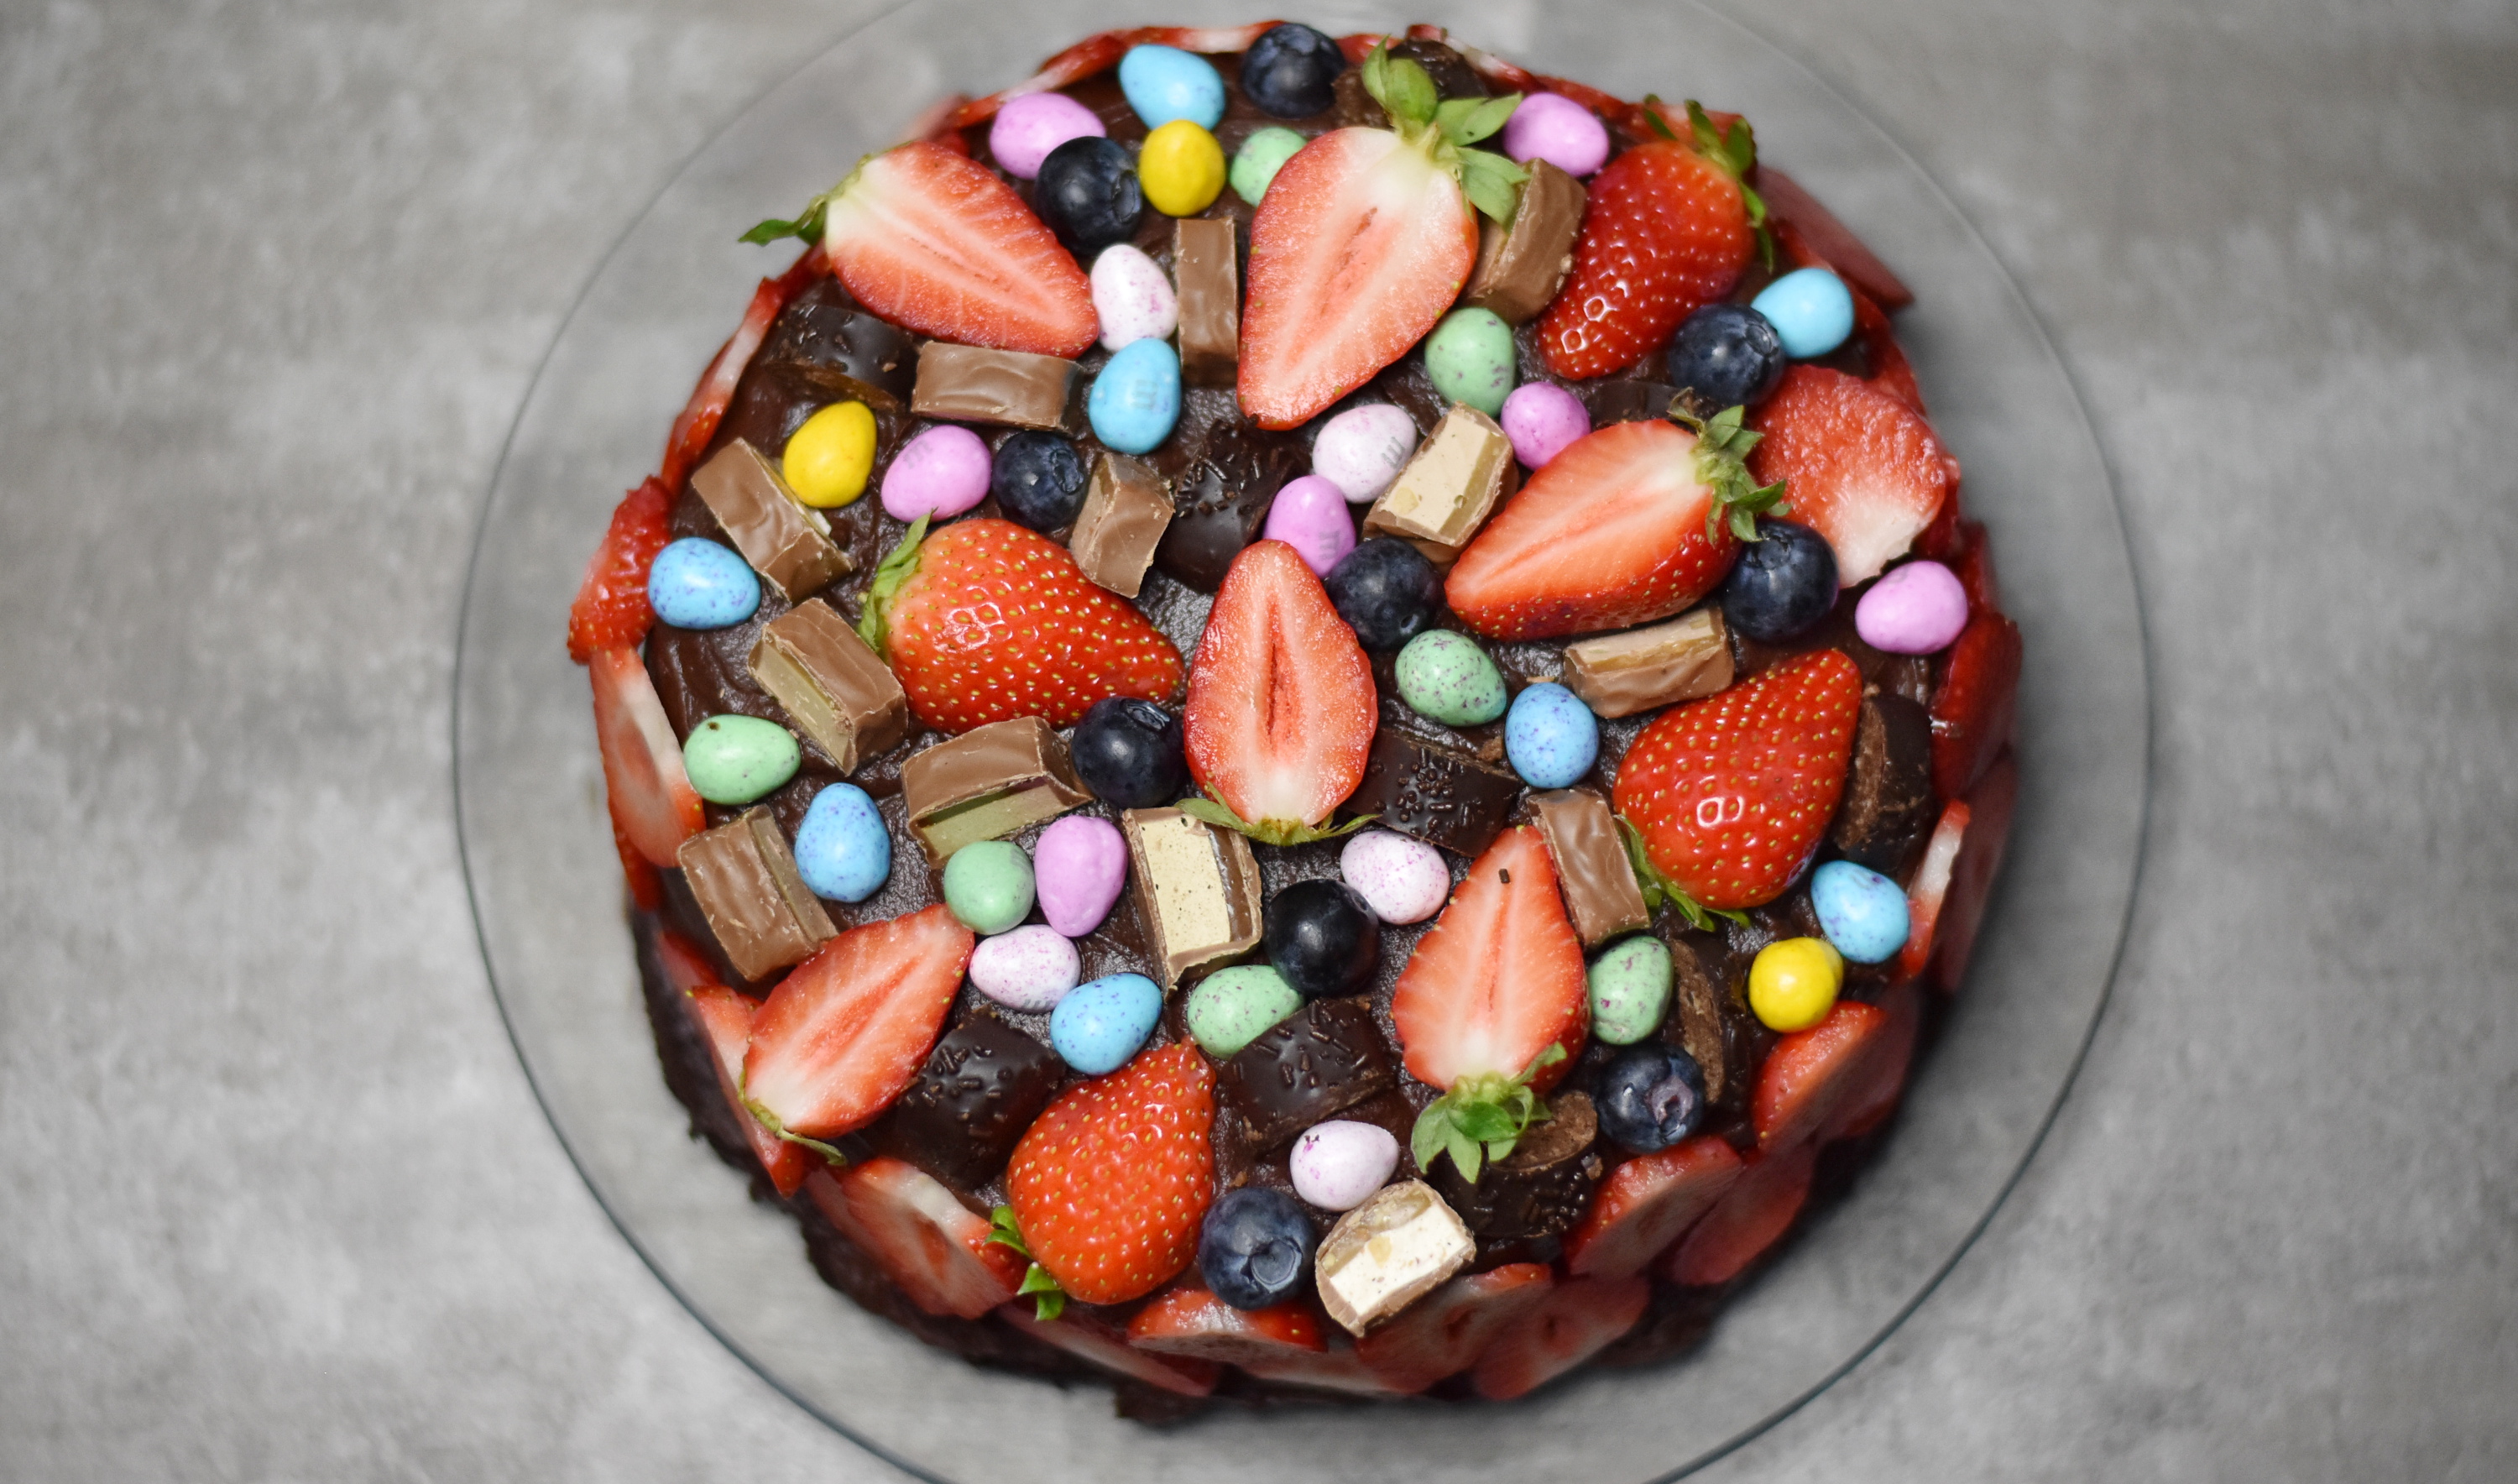 Pynt kagen med masser af bær, chokoladestykker og slik. Brug f.eks. skiver af jordbær på siderne af kagen.